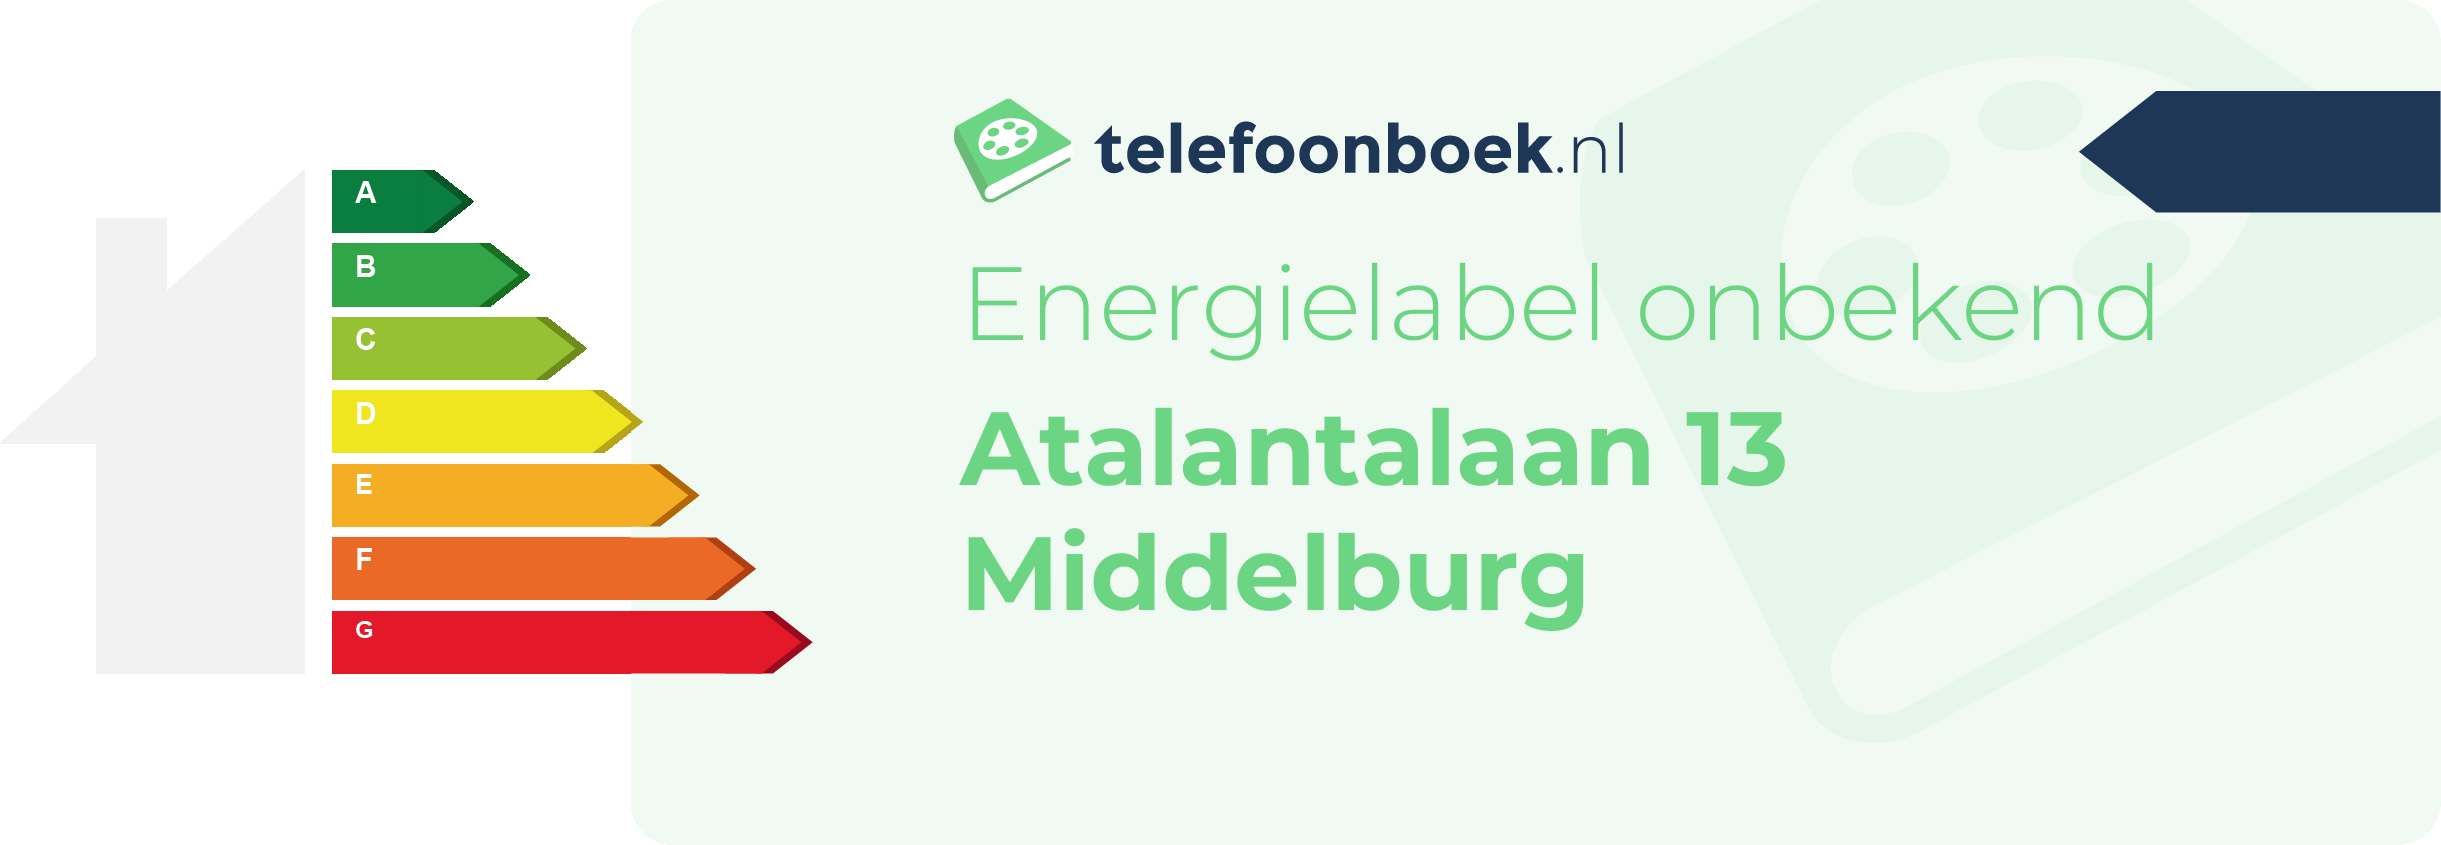 Energielabel Atalantalaan 13 Middelburg